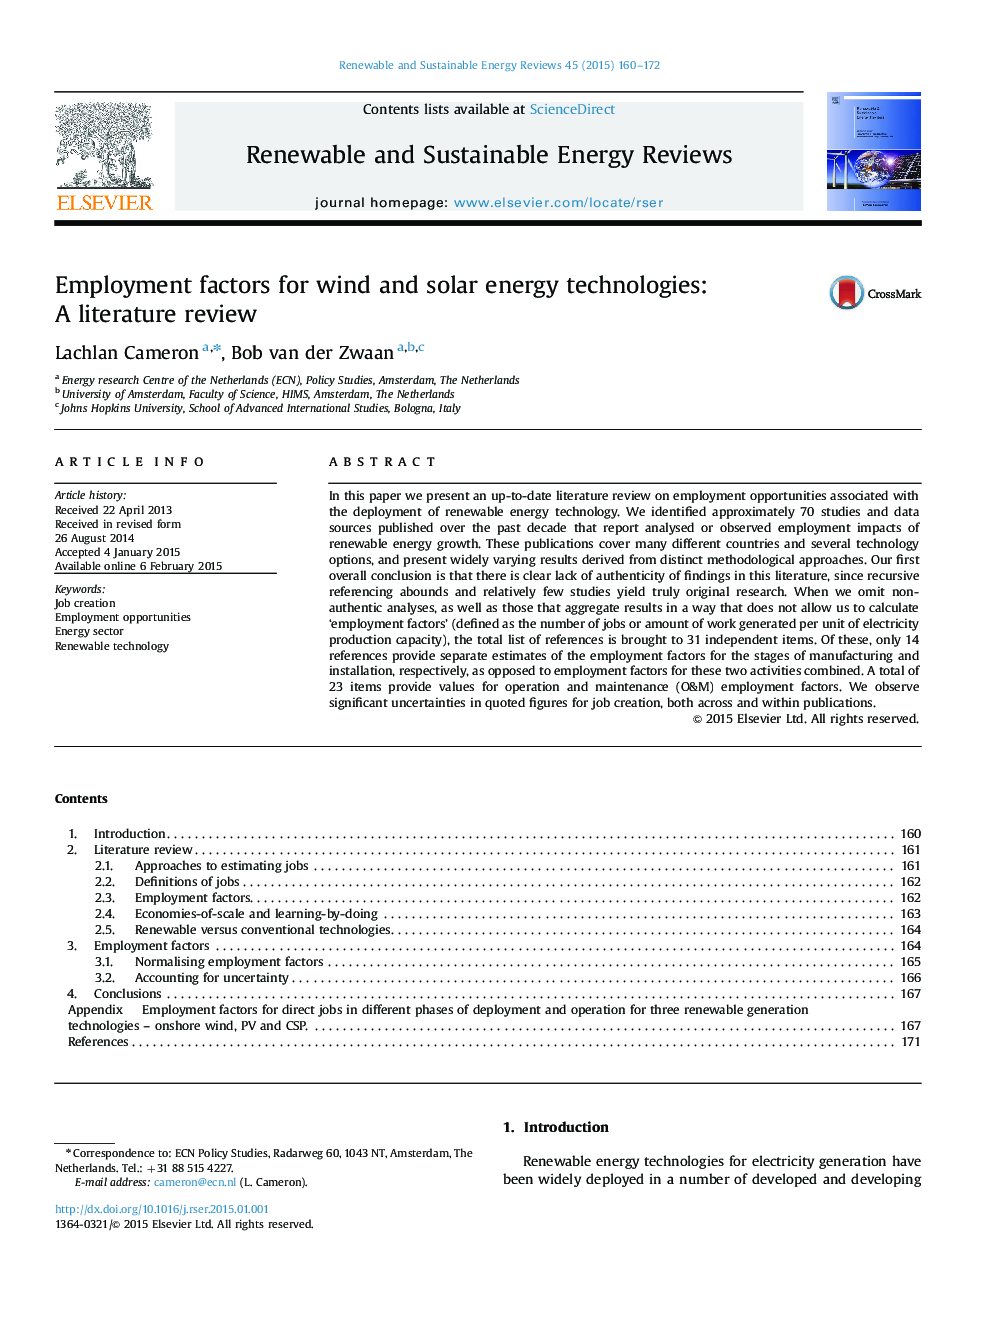 عوامل اشتغال برای فناوری های انرژی باد و باد: بررسی ادبیات 